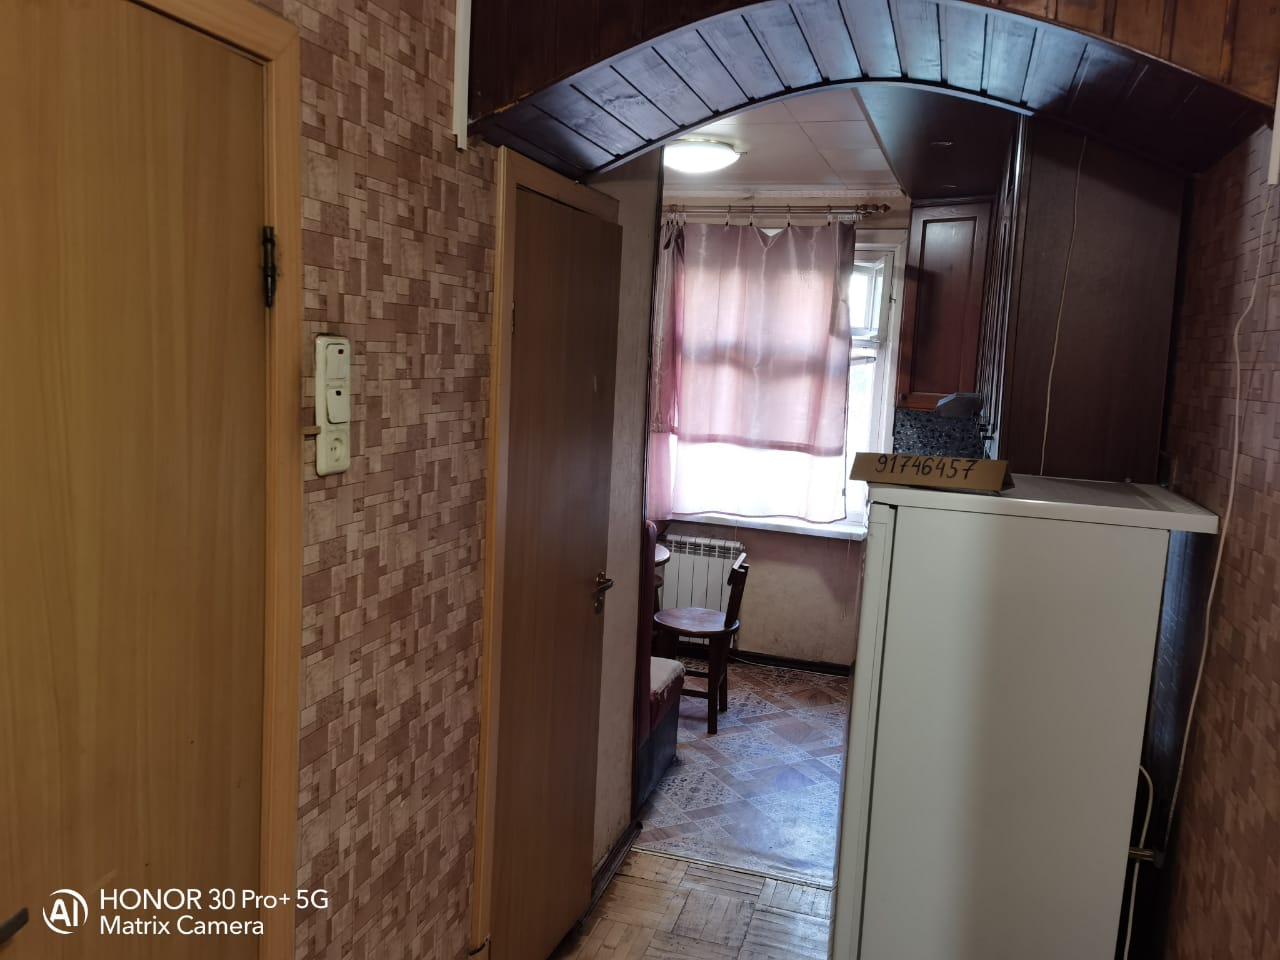 Двухкомнатная квартира на улице Машинцева в Химках. Холодильник